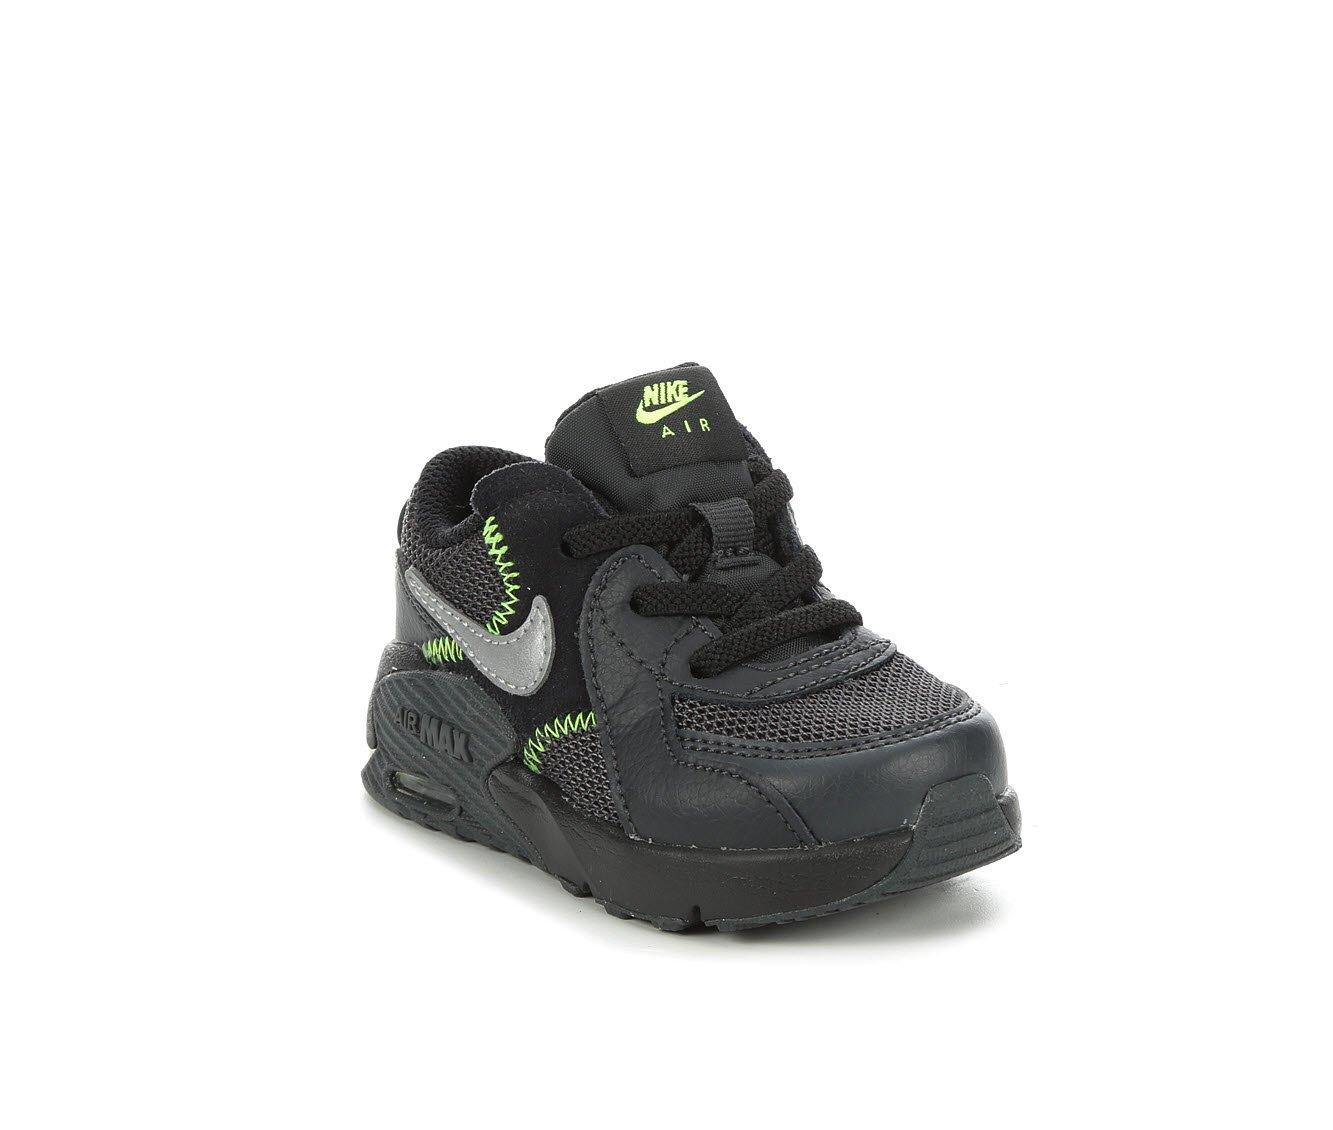 Elevado Novedad Sobretodo Boys' Nike Infant & Toddler Air Max Excee Sneakers